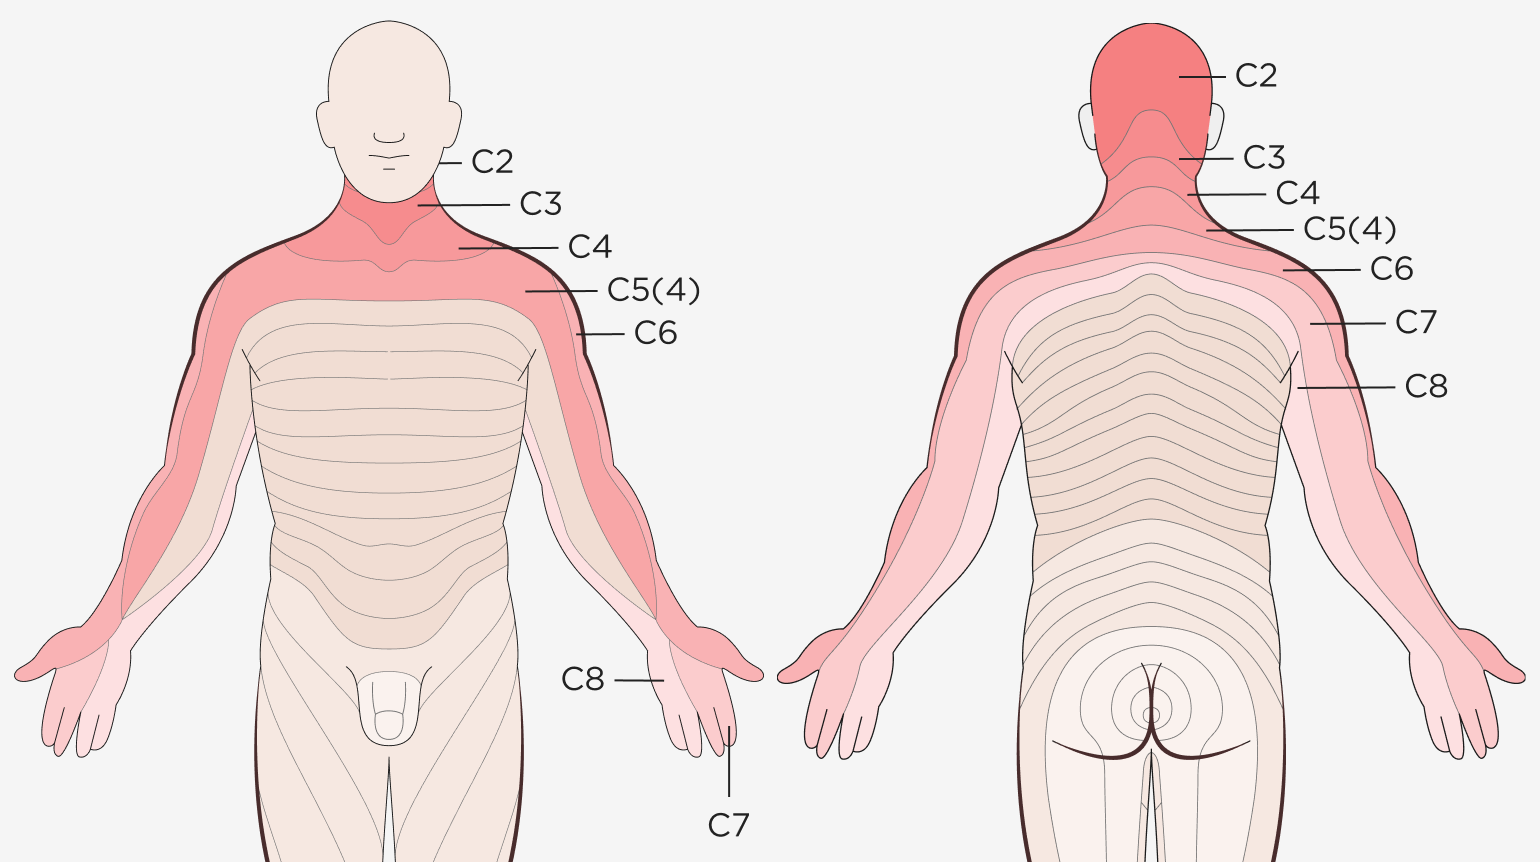 Anatomische Illustration einer männlichen Person von vorne und hinten mit den Wirbeln der HWS, BWS und LWS und den jeweiligen Ausstrahlungsgebieten der Nervenwurzeln, die bei einer Verspannung oder Verletzung zwischen den Wirbeln betroffen sind.